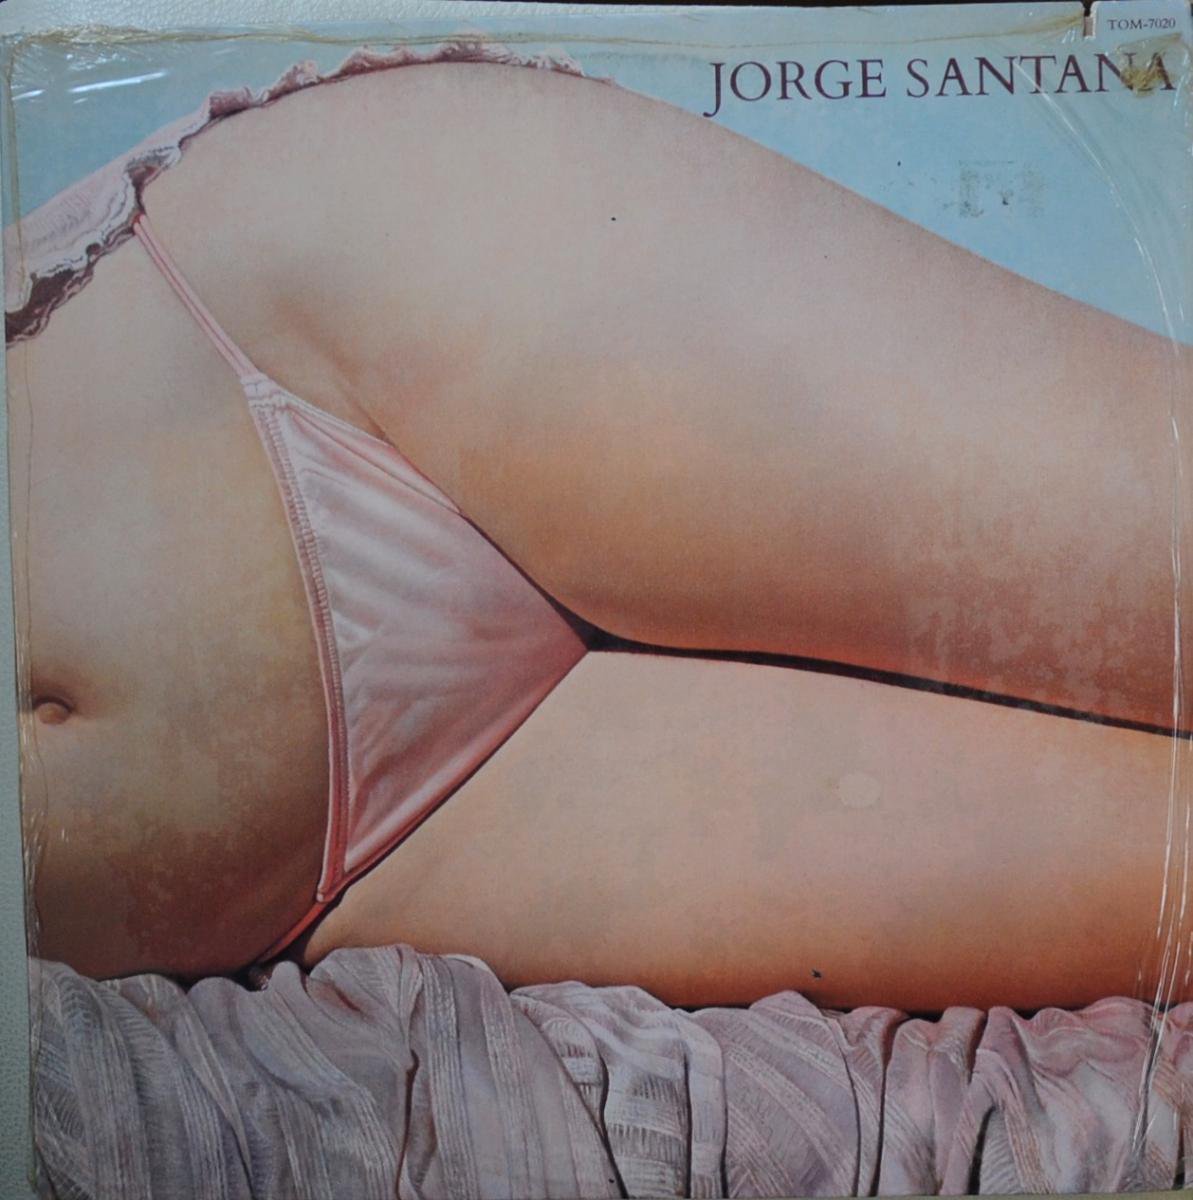 JORGE SANTANA / JORGE SANTANA (LP)